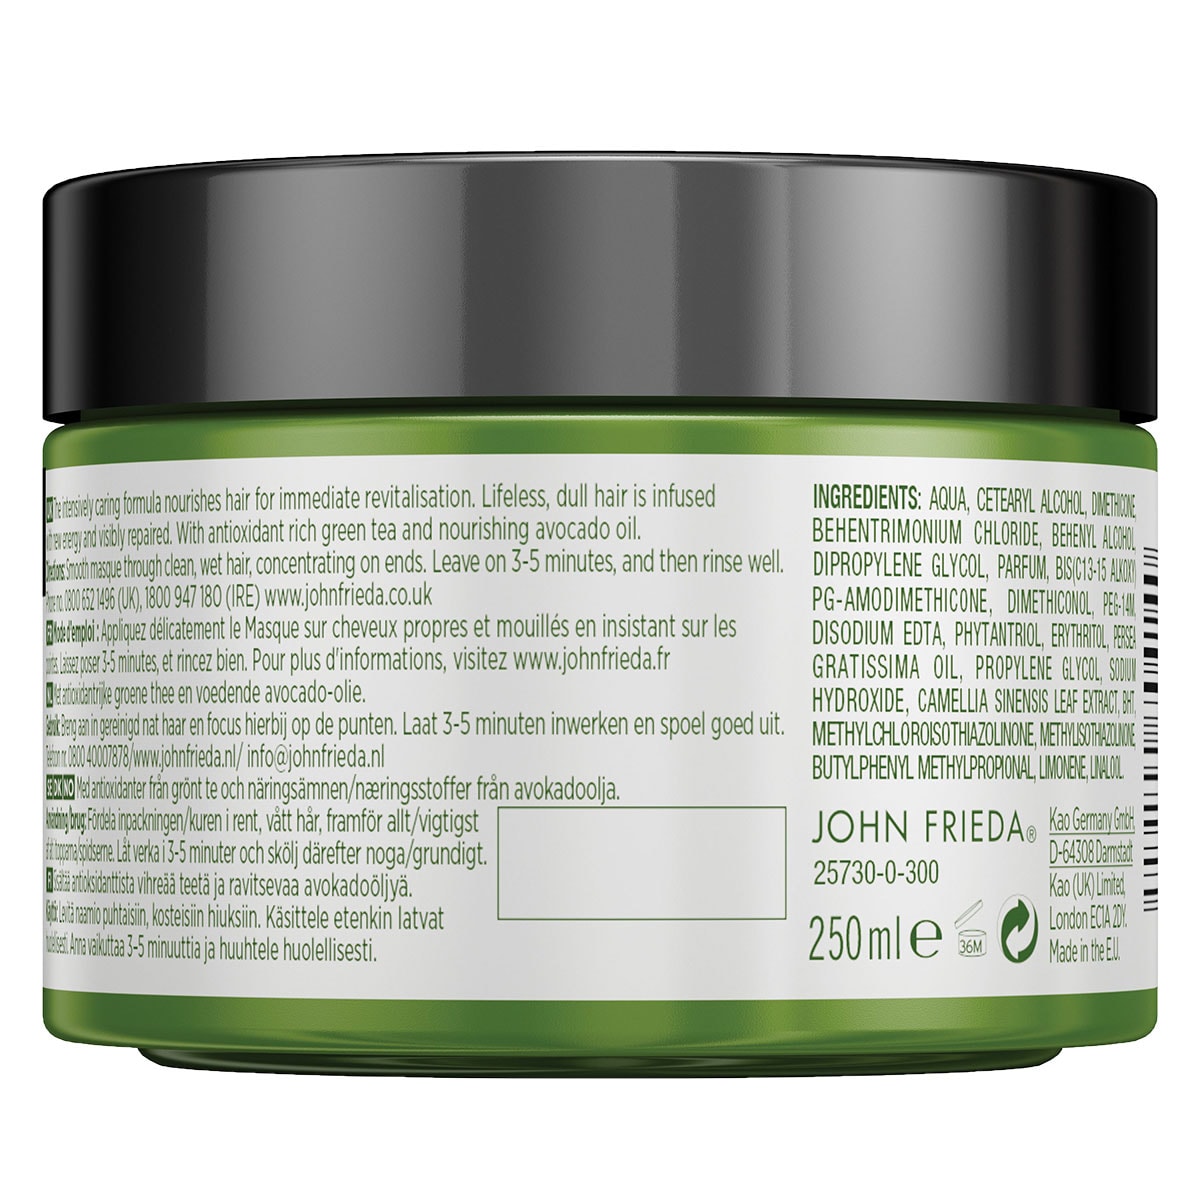 John Frieda Detox & Repair Hair Masque 250ml